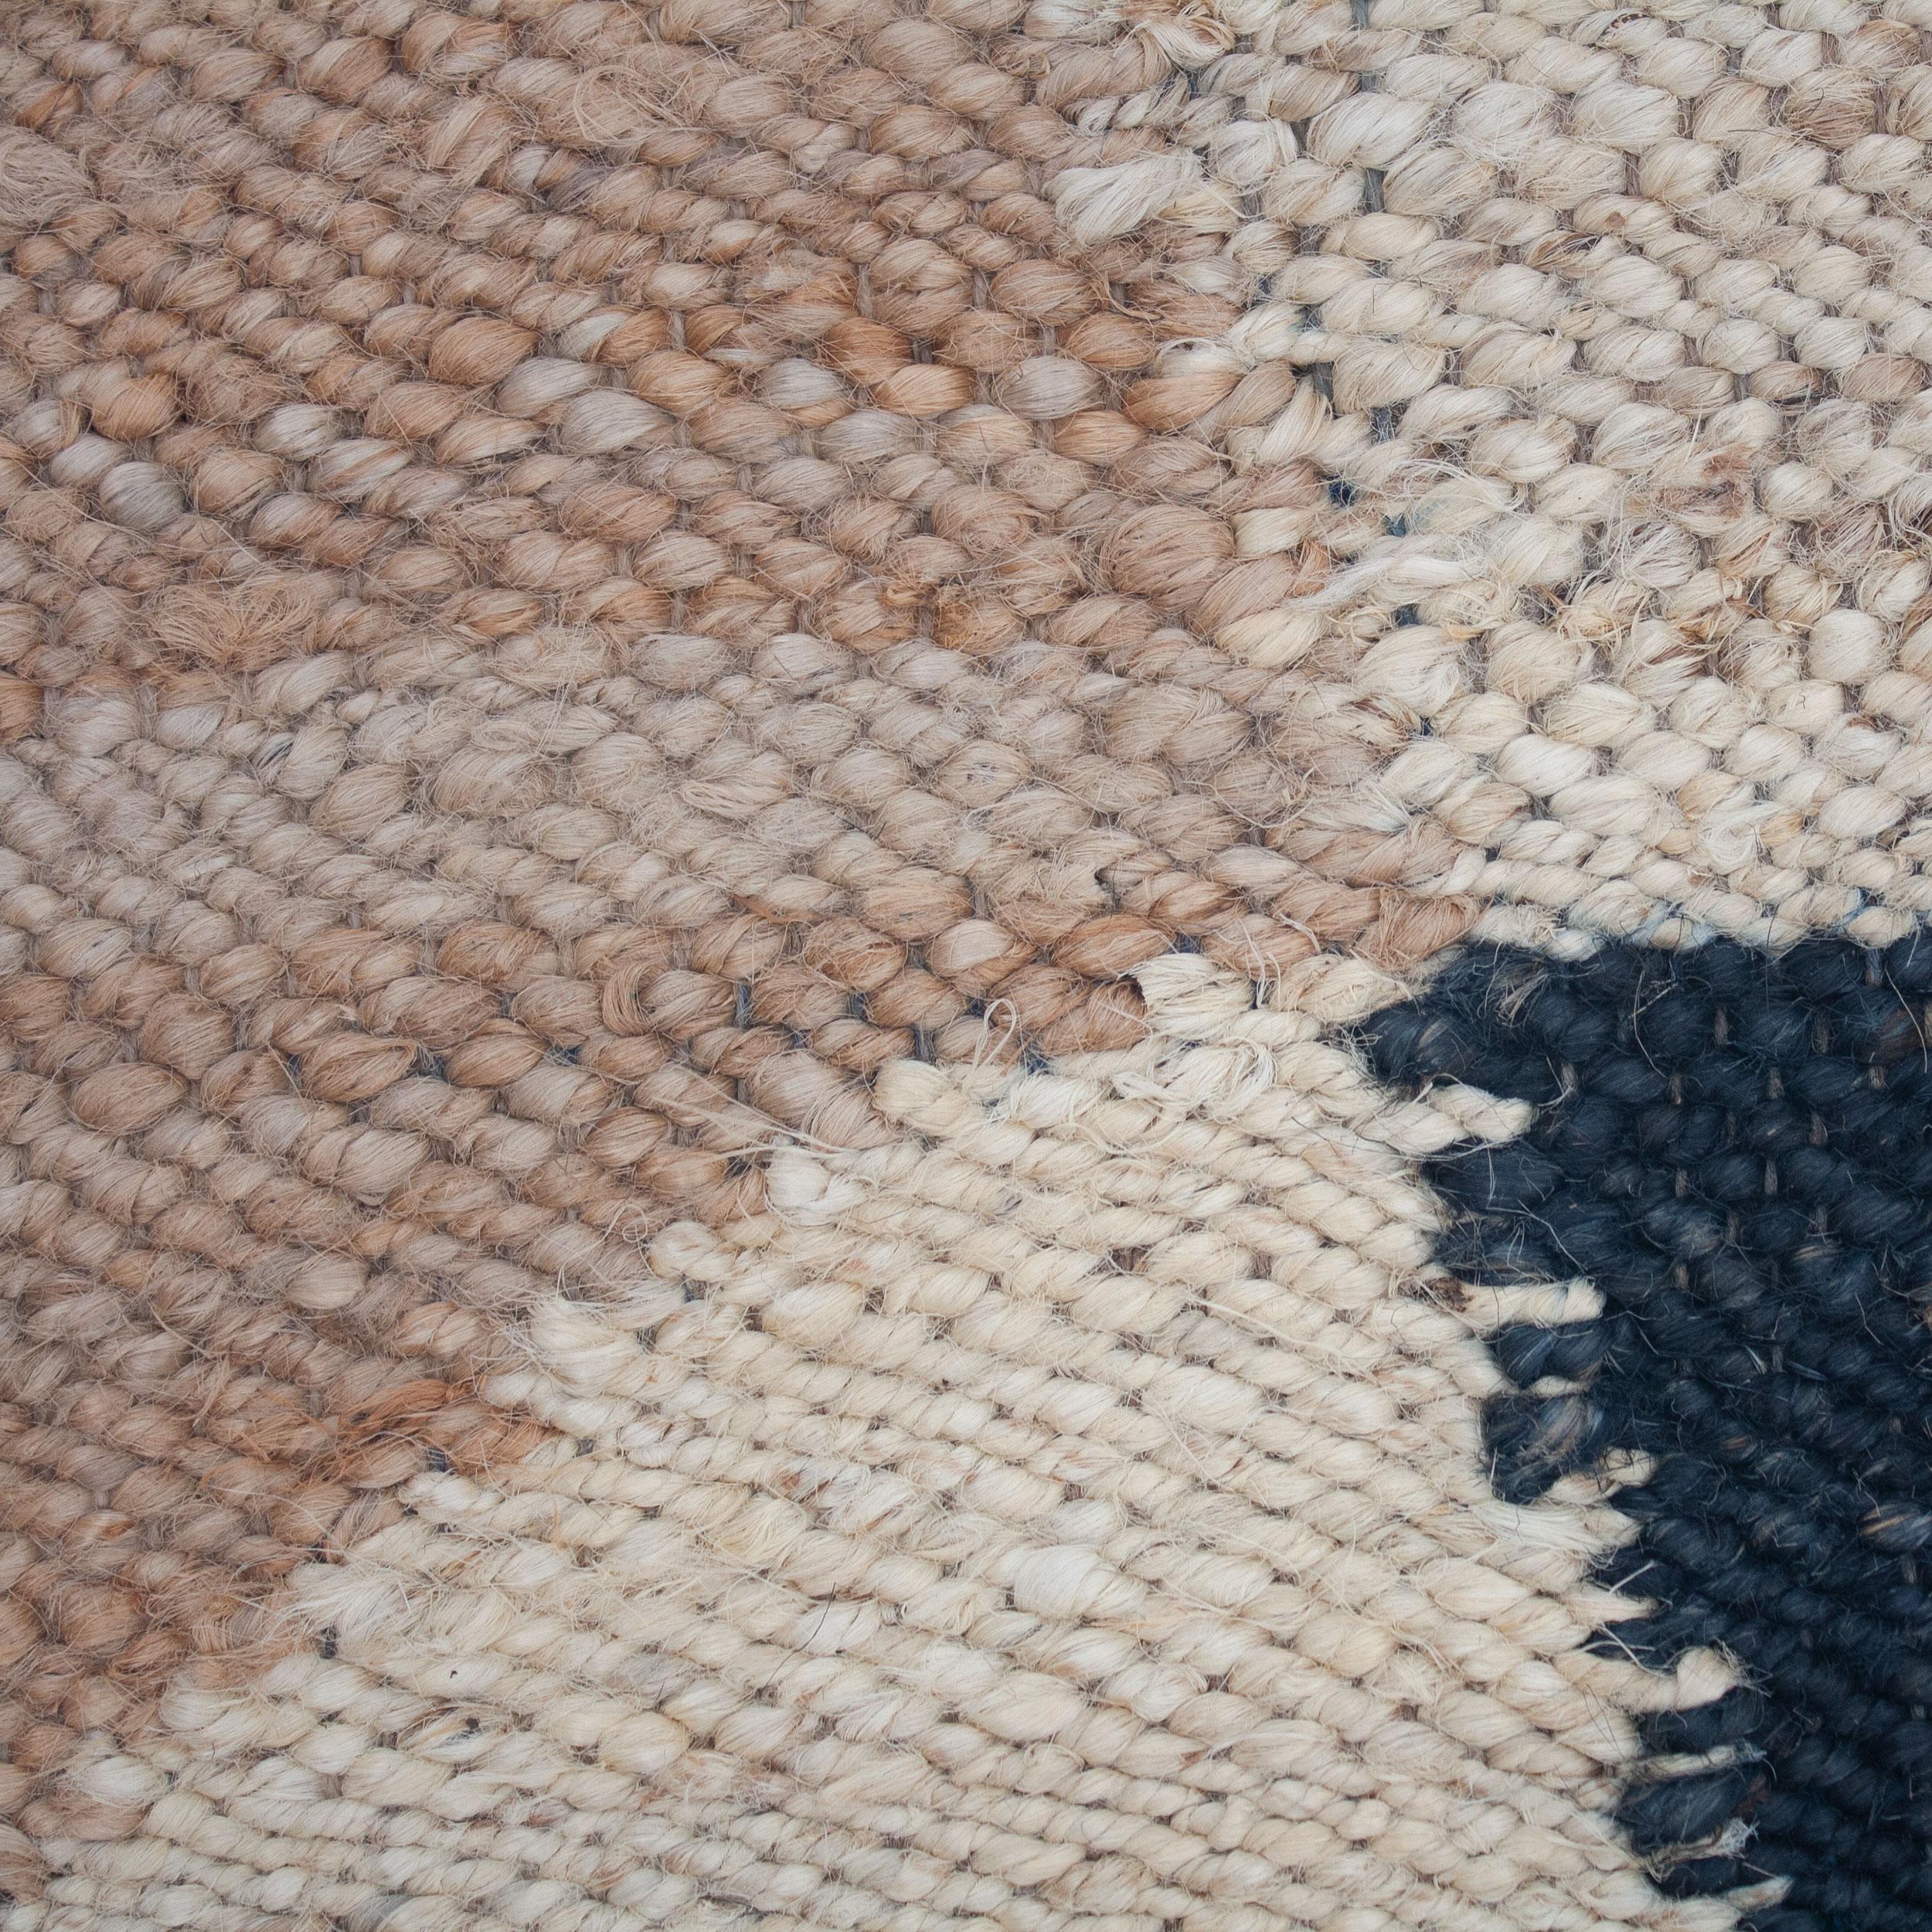 Dieser Juteteppich wurde von Kunsthandwerkern in Rajasthan, Indien, nach ethischen Gesichtspunkten mit feinsten Jutegarnen in einer traditionellen Webtechnik gewebt, die in dieser Region heimisch ist.

Der Kauf dieses handgefertigten Teppichs